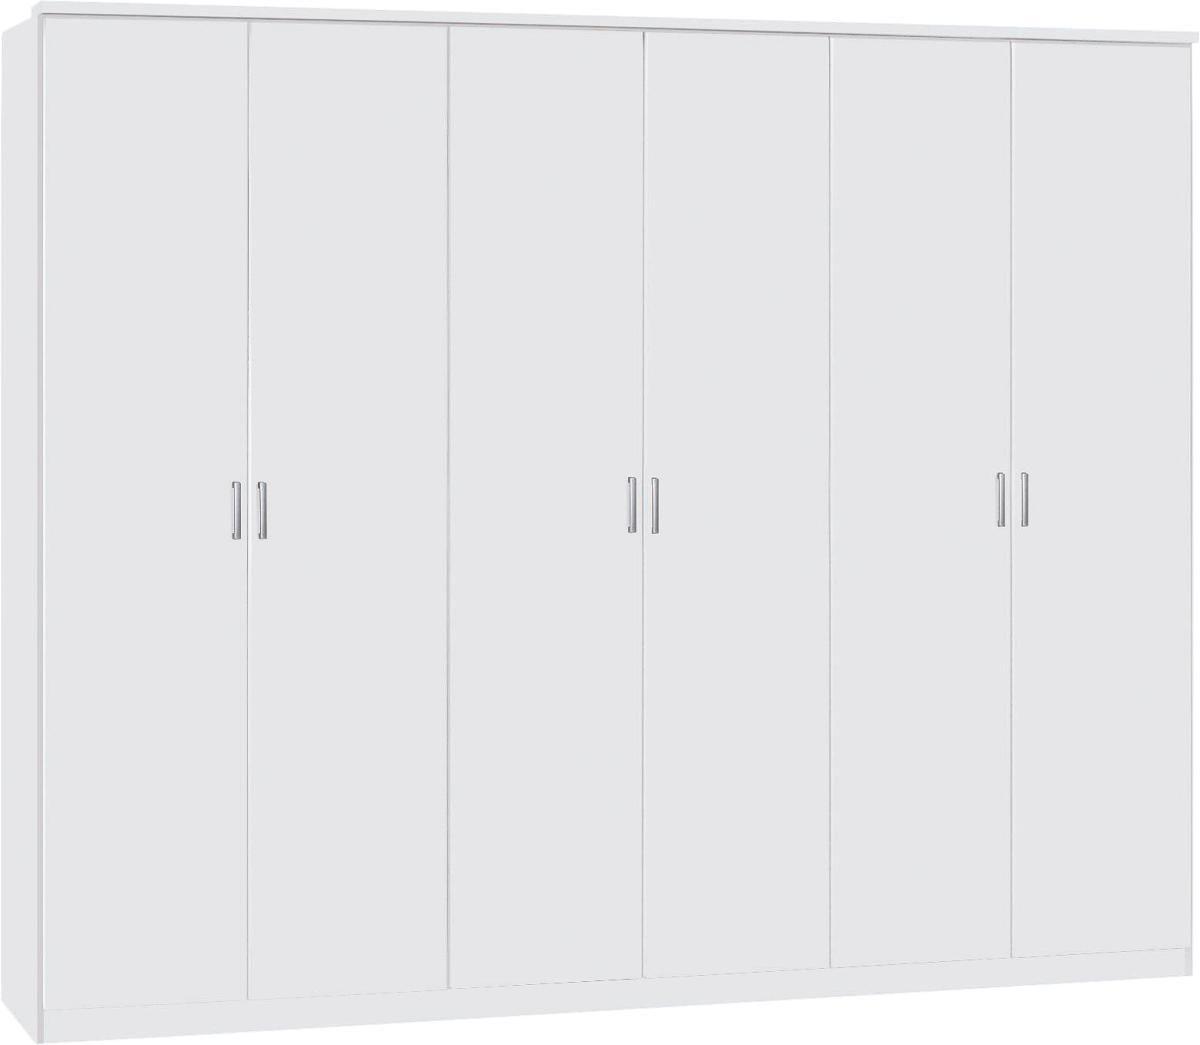 Drehtürenschrank 271cm Lemgo, Weiß - Eichefarben/Weiß, KONVENTIONELL, Holz/Holzwerkstoff (271/212/54cm)